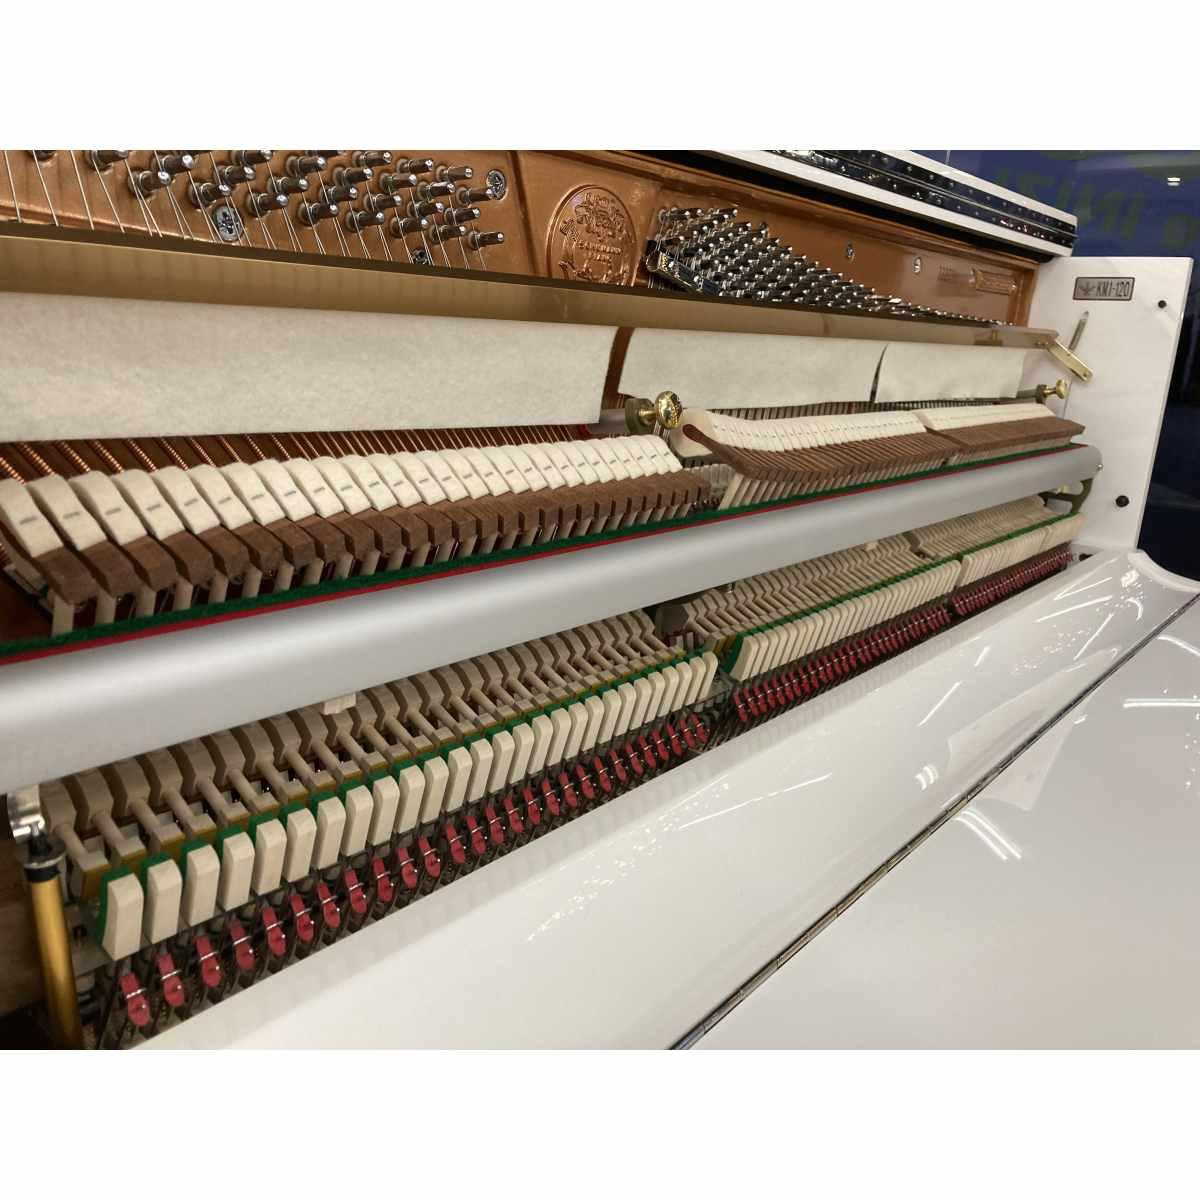 Schumann 120 pianoforte verticale bianco